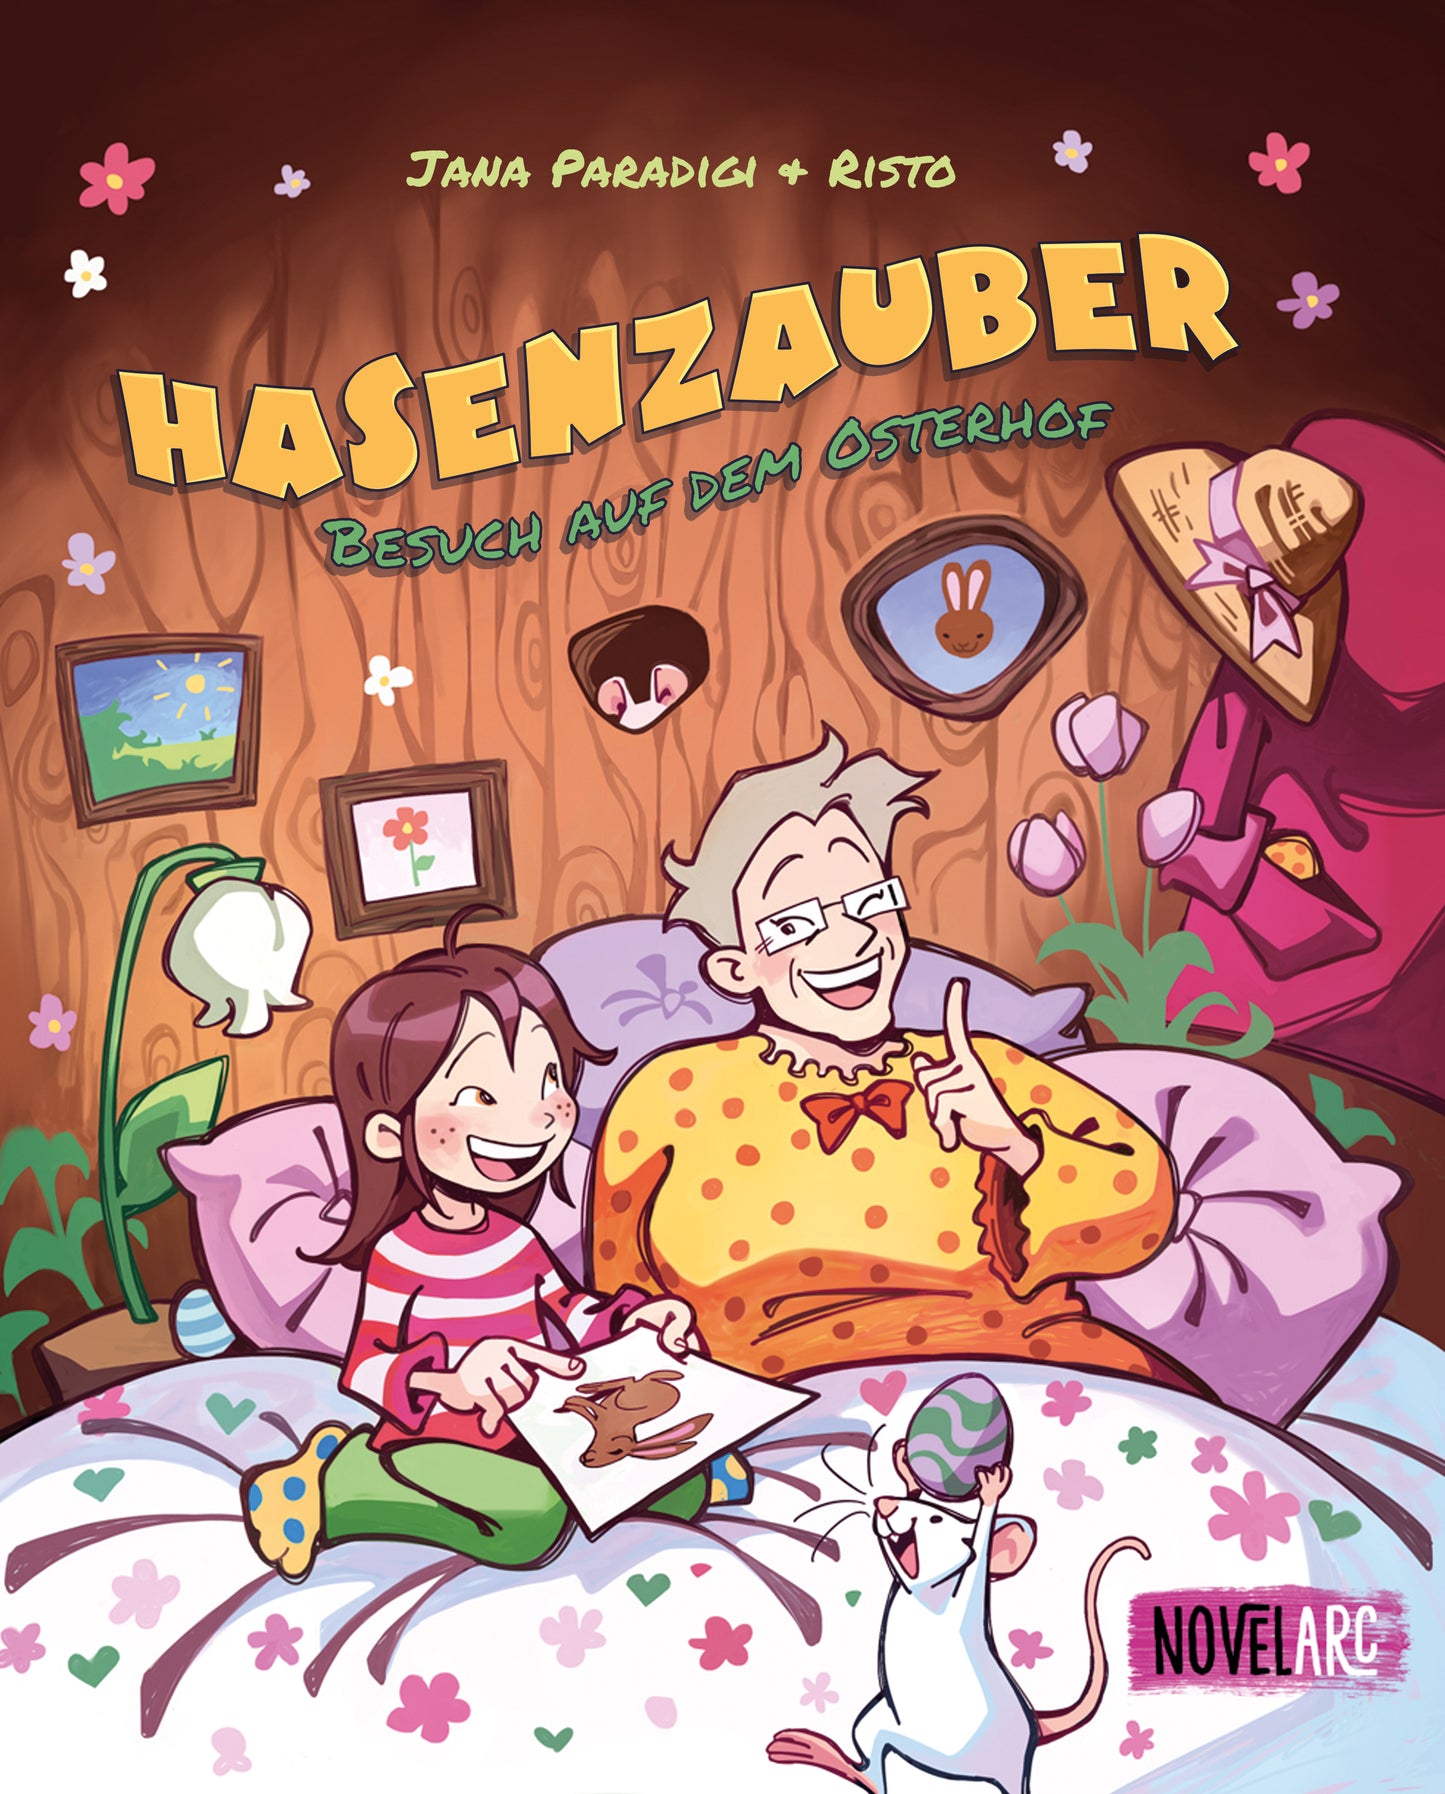 Hasenzauber - Besuch auf dem Osterhof: Ein fantastisches Abenteuer zu Ostern zum Vorlesen ab 4 Jahren mit Seite zum Ausmalen.